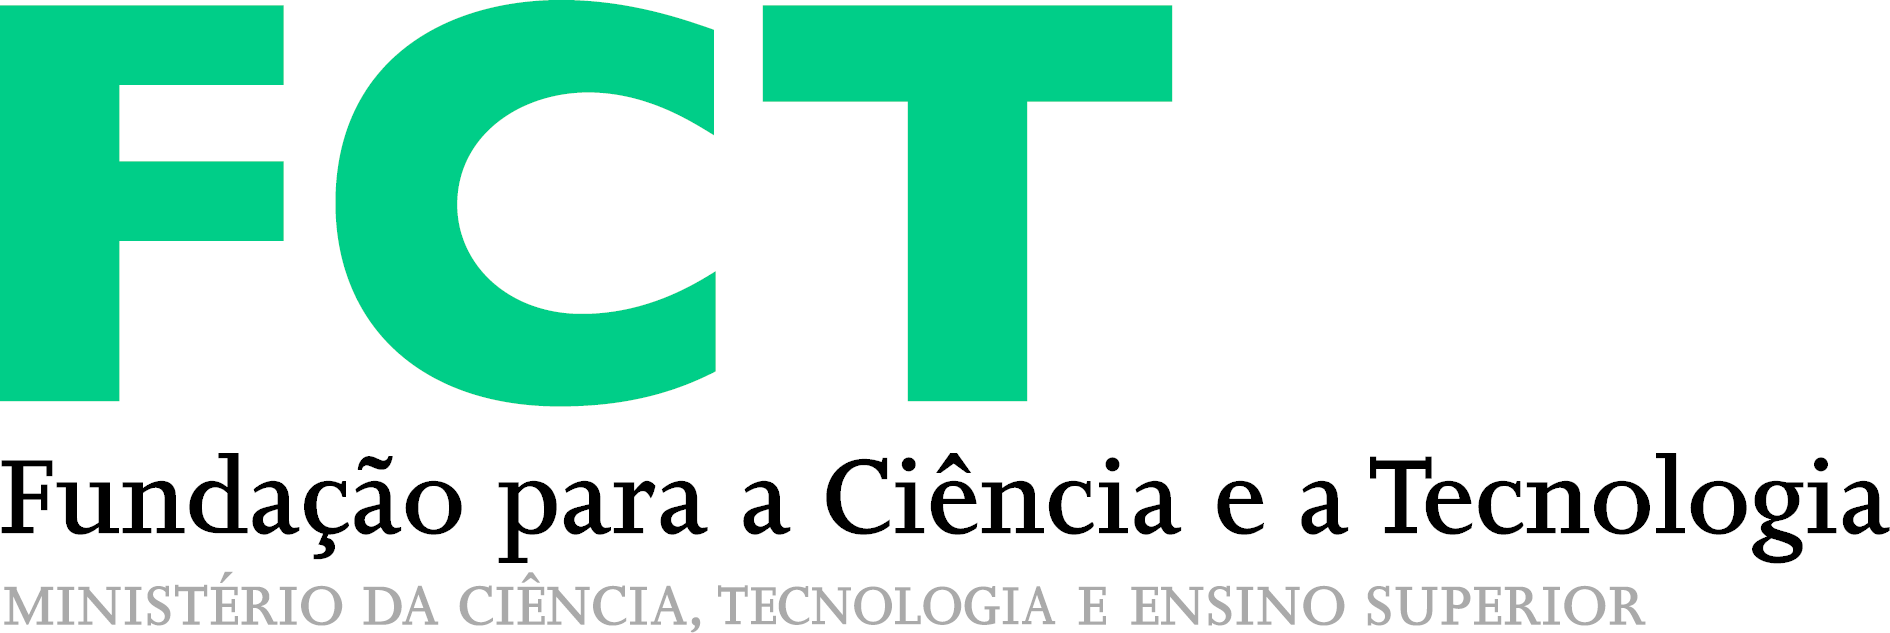 FCT